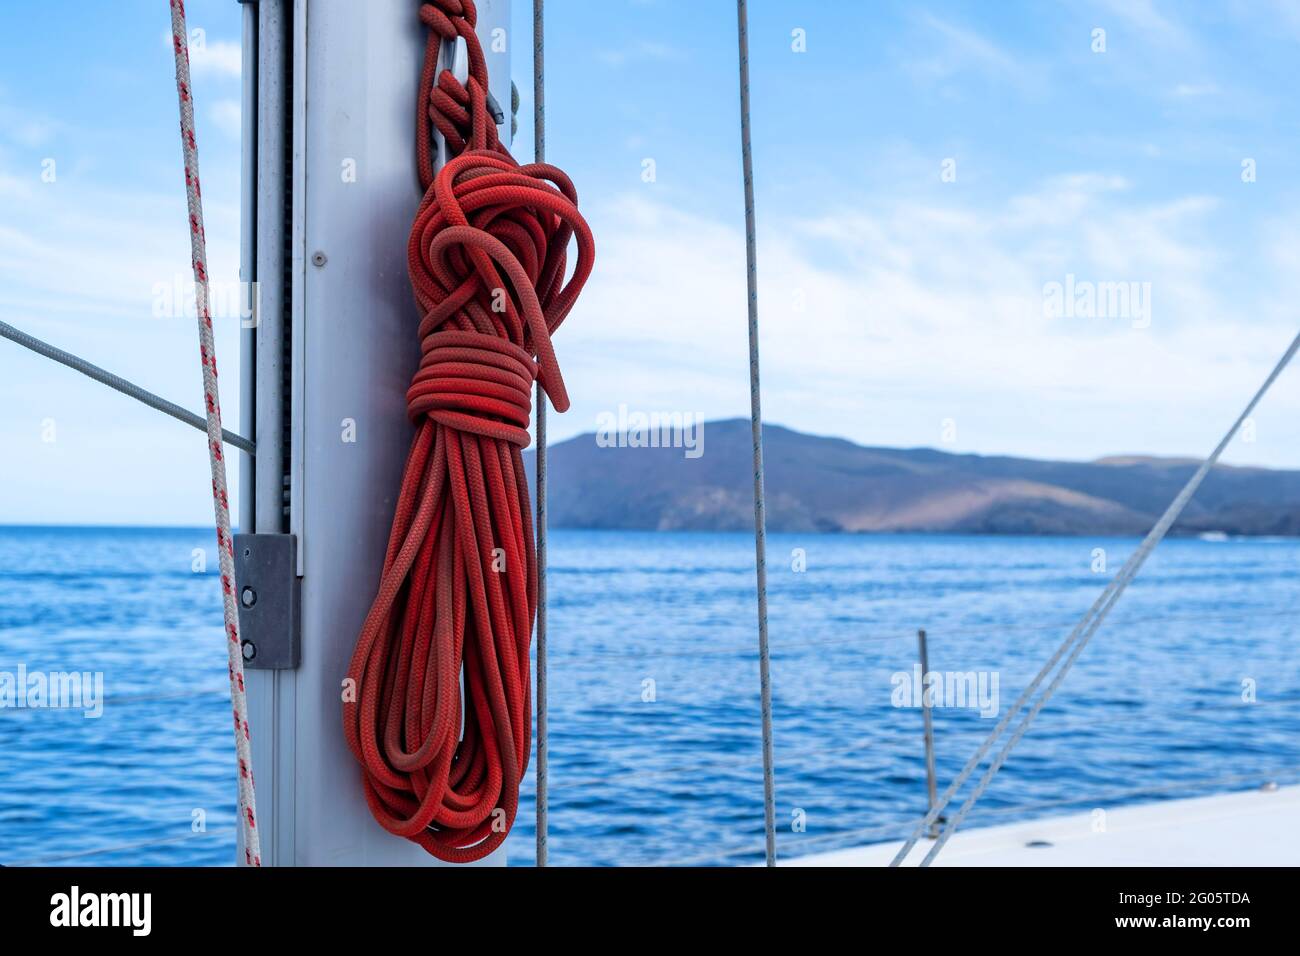 Amarrer des cordes sur le bateau à voile, flou paysage marin arrière-plan. Corde de yachting de couleur rouge sur le mât du navire. Gros plan, espace de copie. Carte de croisière Voilier Banque D'Images